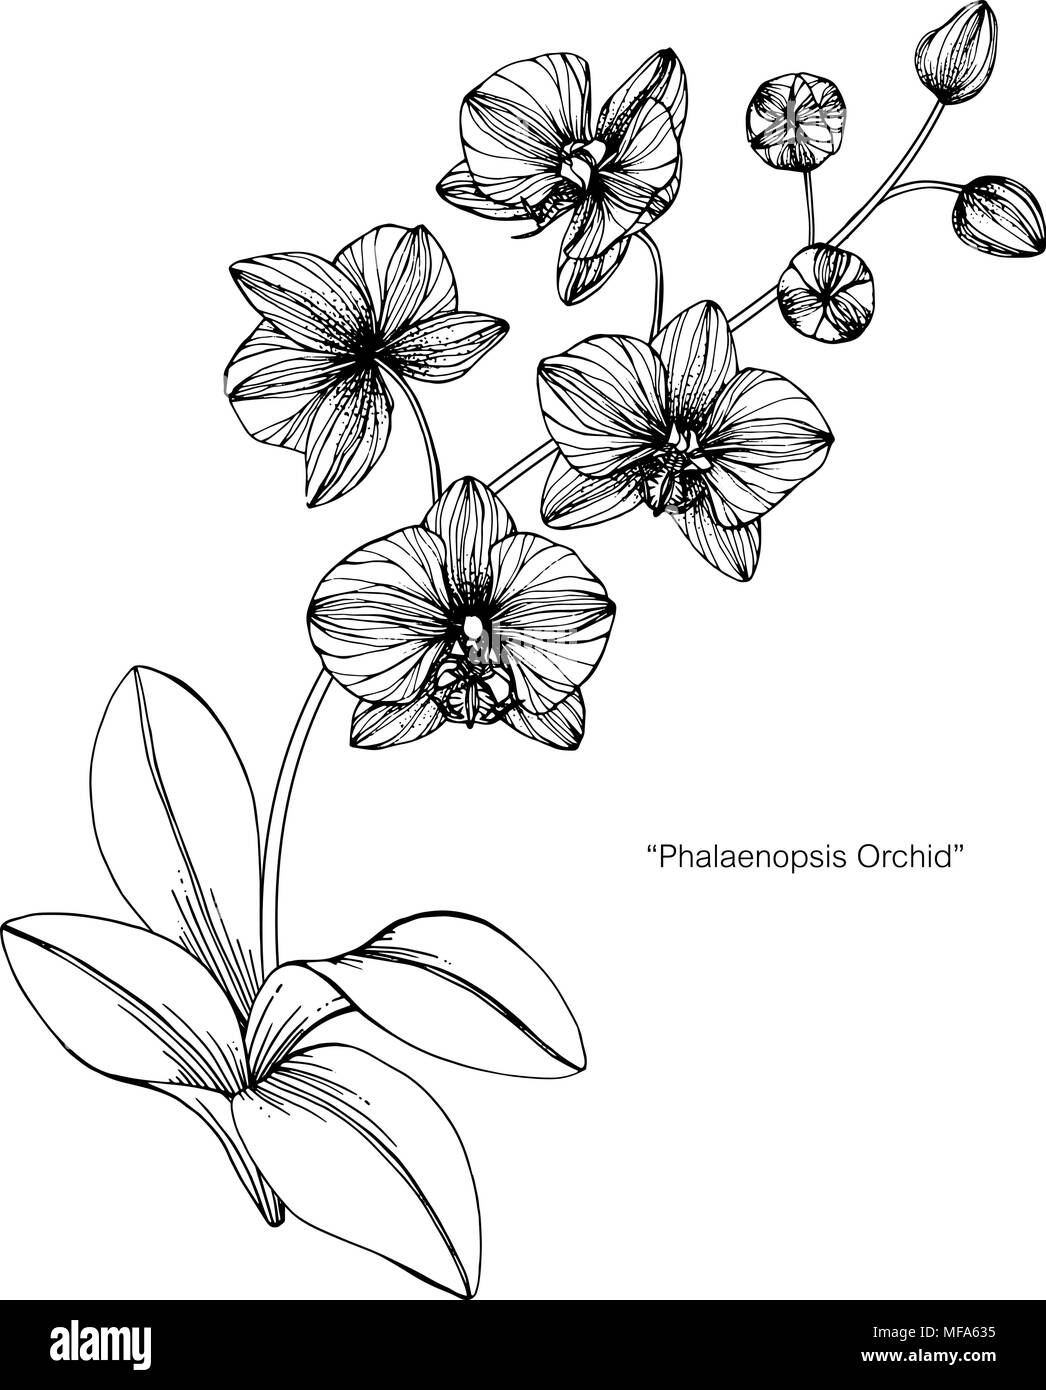 Fiori di orchidea disegno illustrativo. In bianco e nero con la linea arte  su sfondi bianchi Immagine e Vettoriale - Alamy